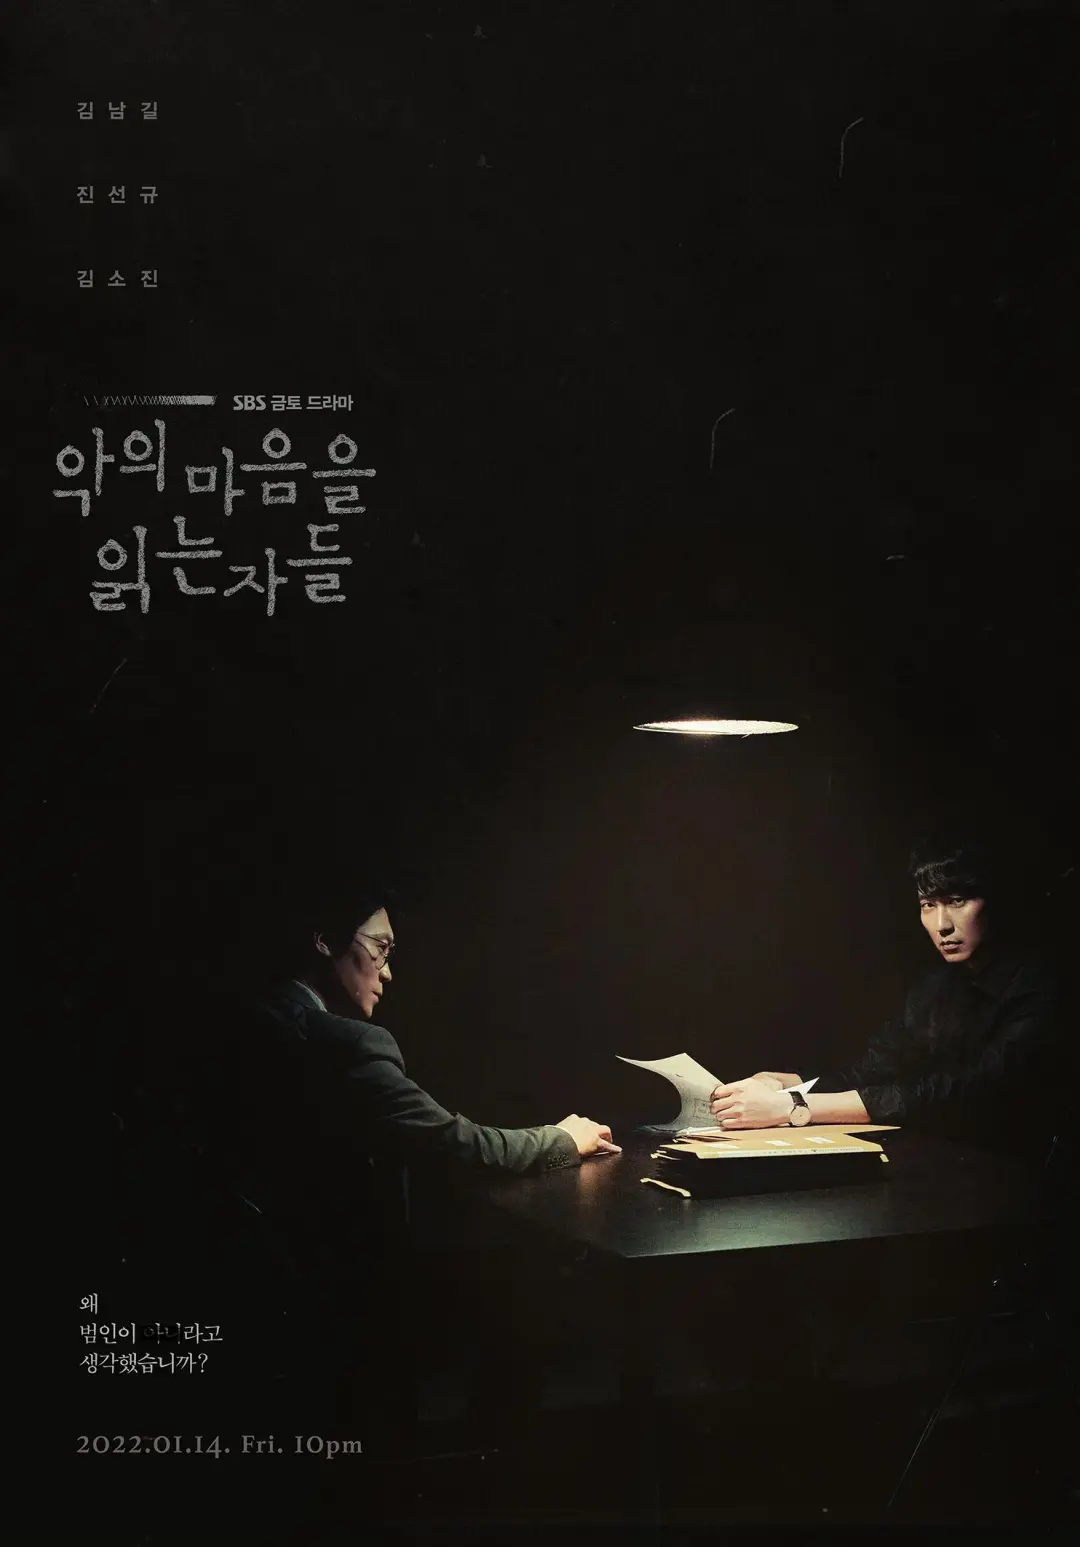 刚开播就冲上收视第一，这韩剧《解读恶之心的人们》太过瘾了